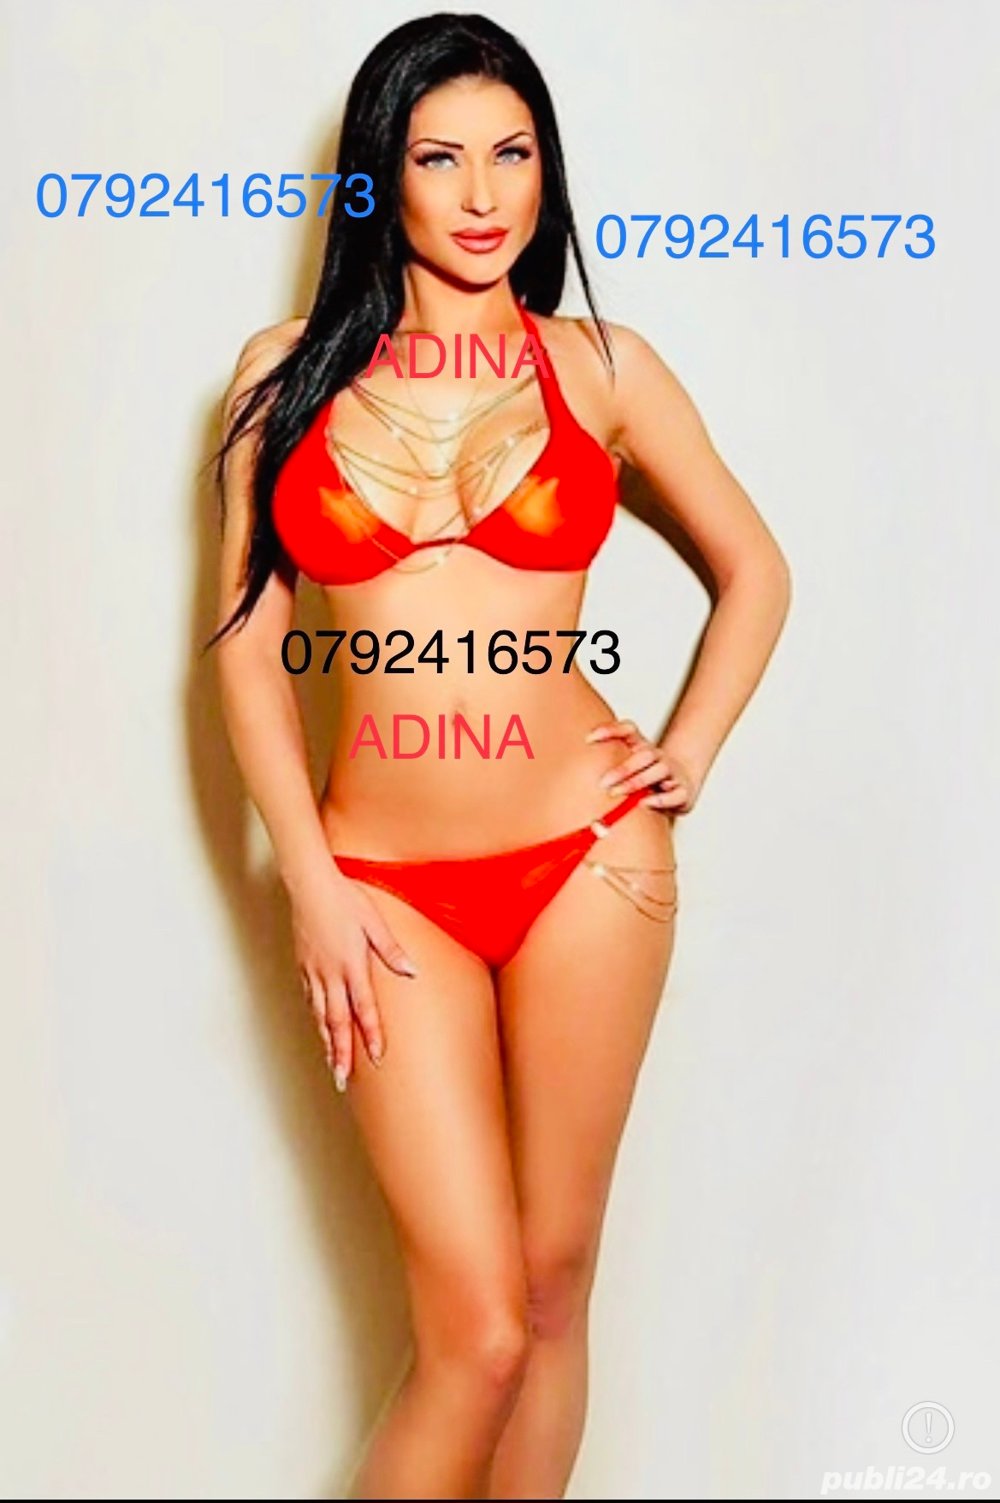 Adina lux escort  - imagine 5